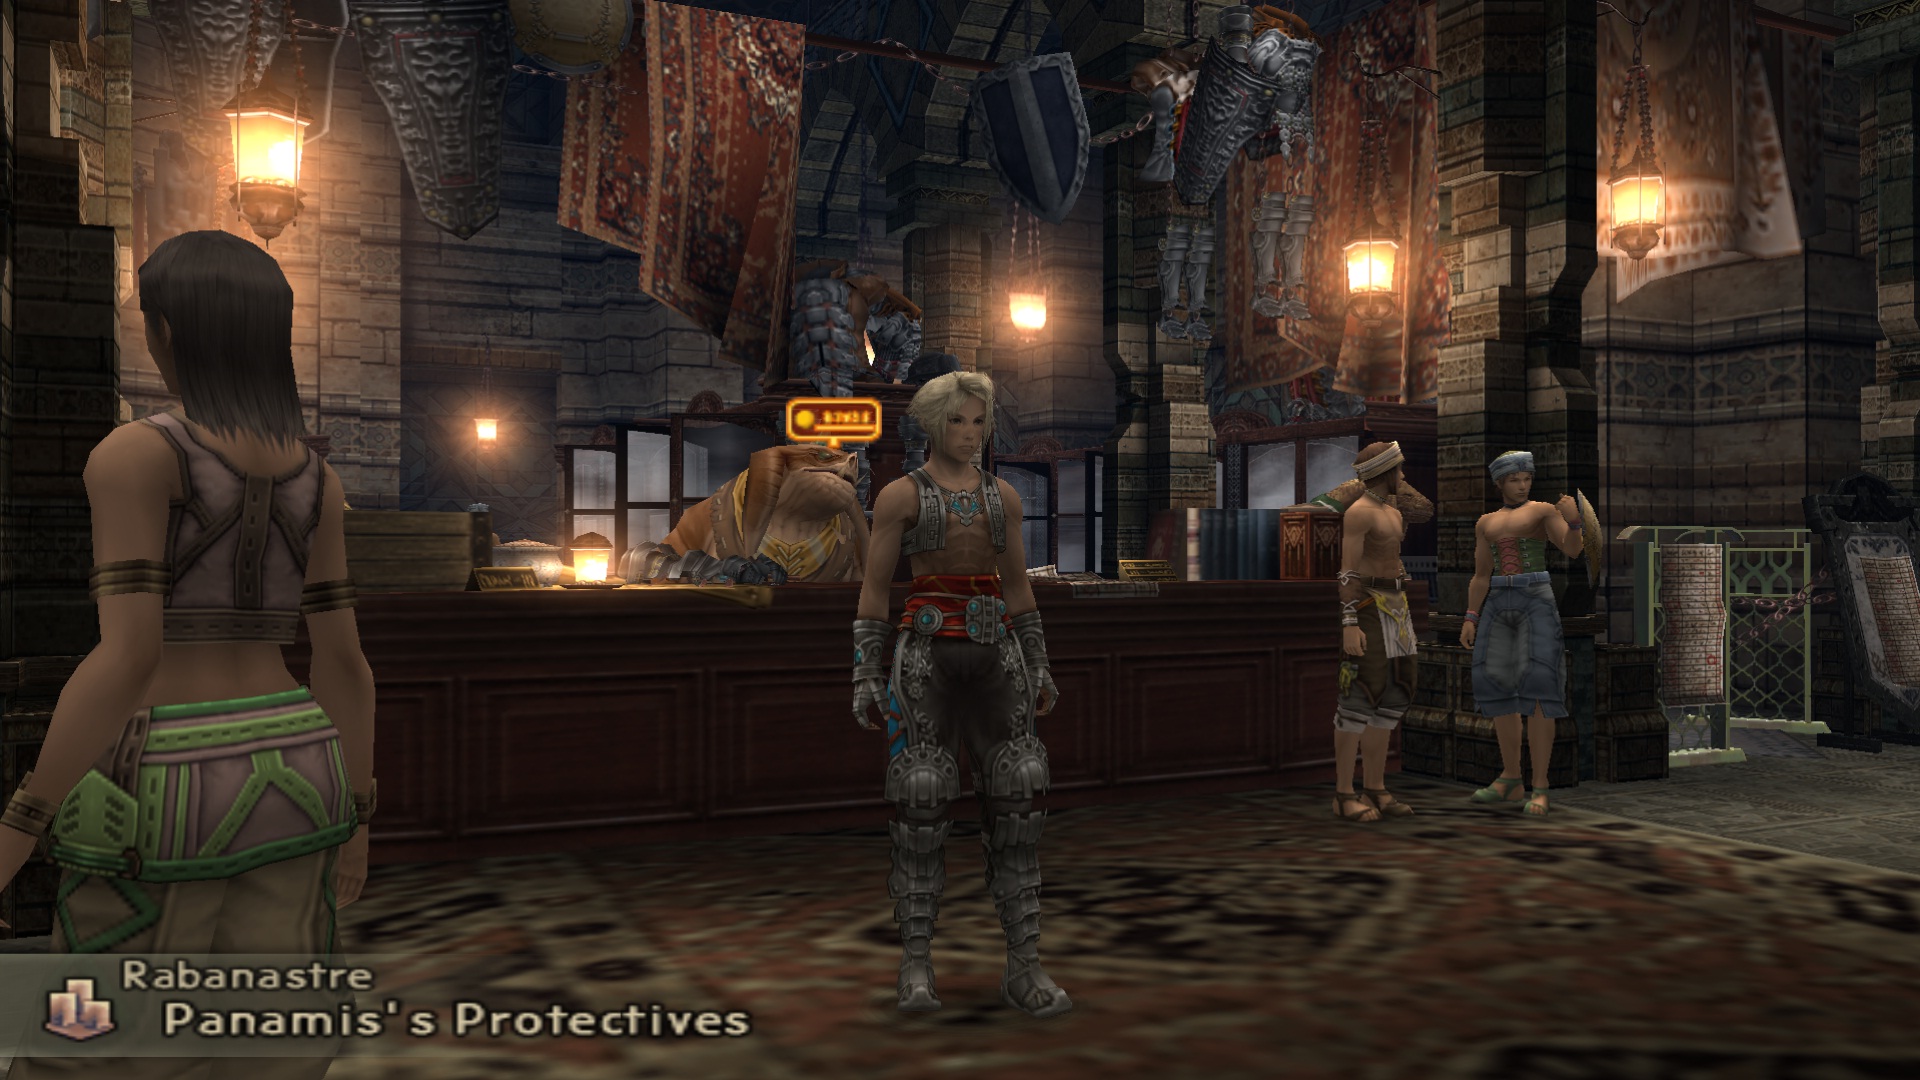 A Final Fantasy 12 item shop and bazaar.